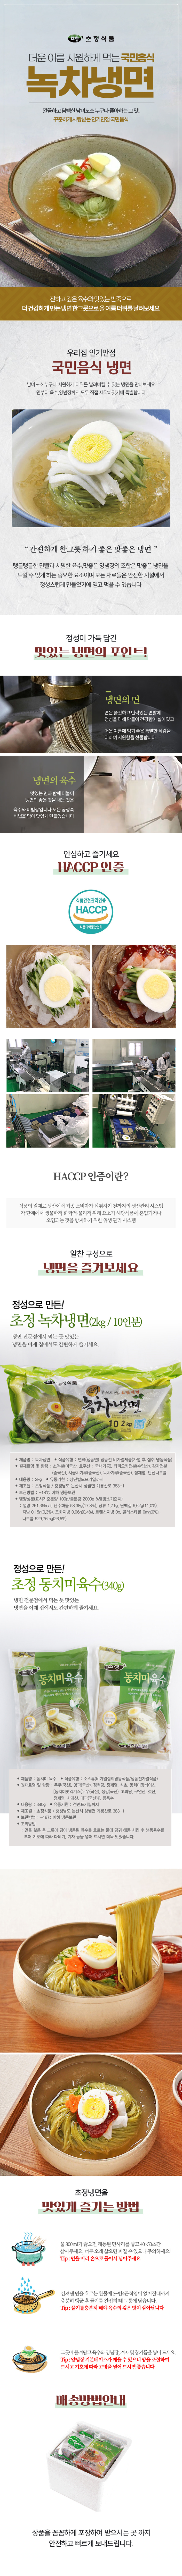 22_chojung_dong_nokcha_page.jpg